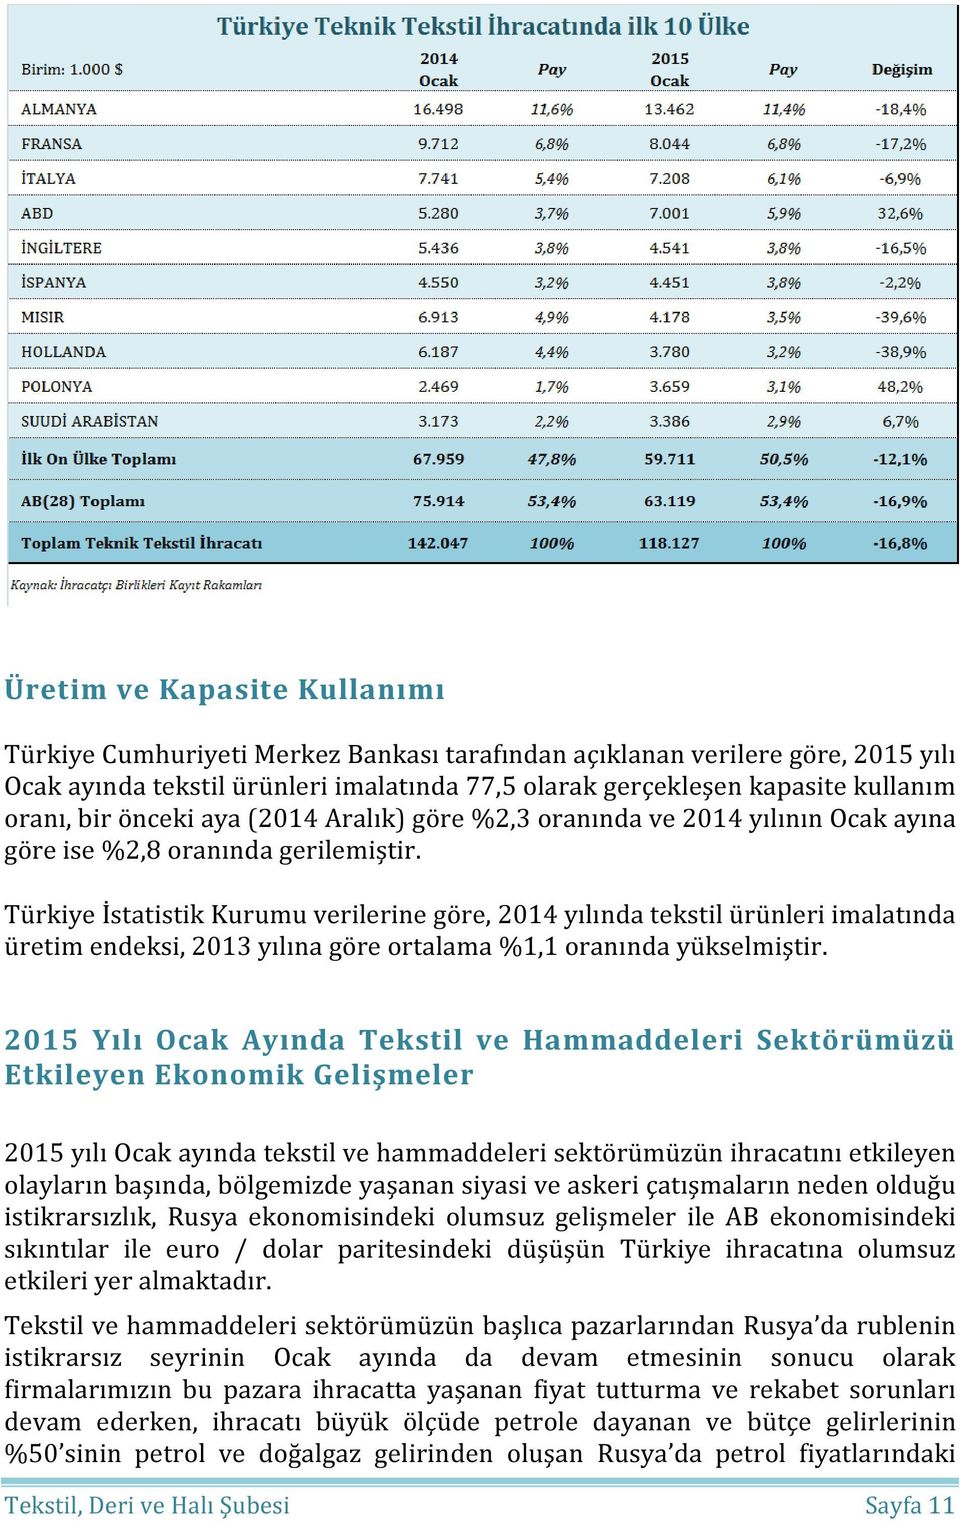 Türkiye İstatistik Kurumu verilerine göre, 2014 yılında tekstil ürünleri imalatında üretim endeksi, 2013 yılına göre ortalama %1,1 oranında yükselmiştir.